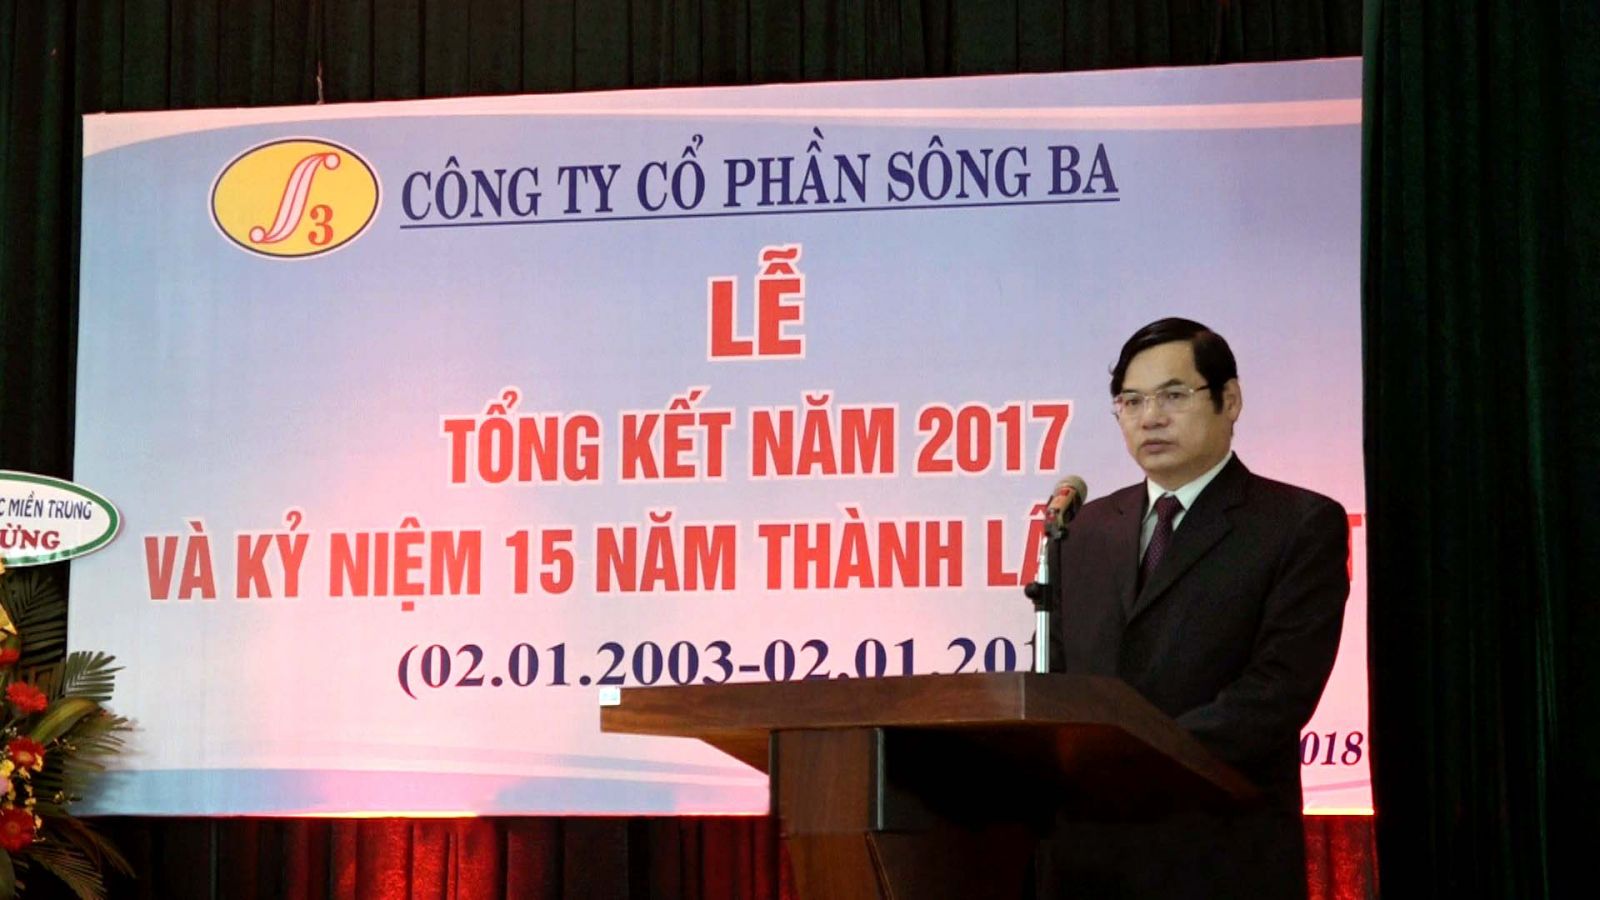 Ông Nguyễn Thành - Chủ tịch HĐQT - phát biển khai mạc